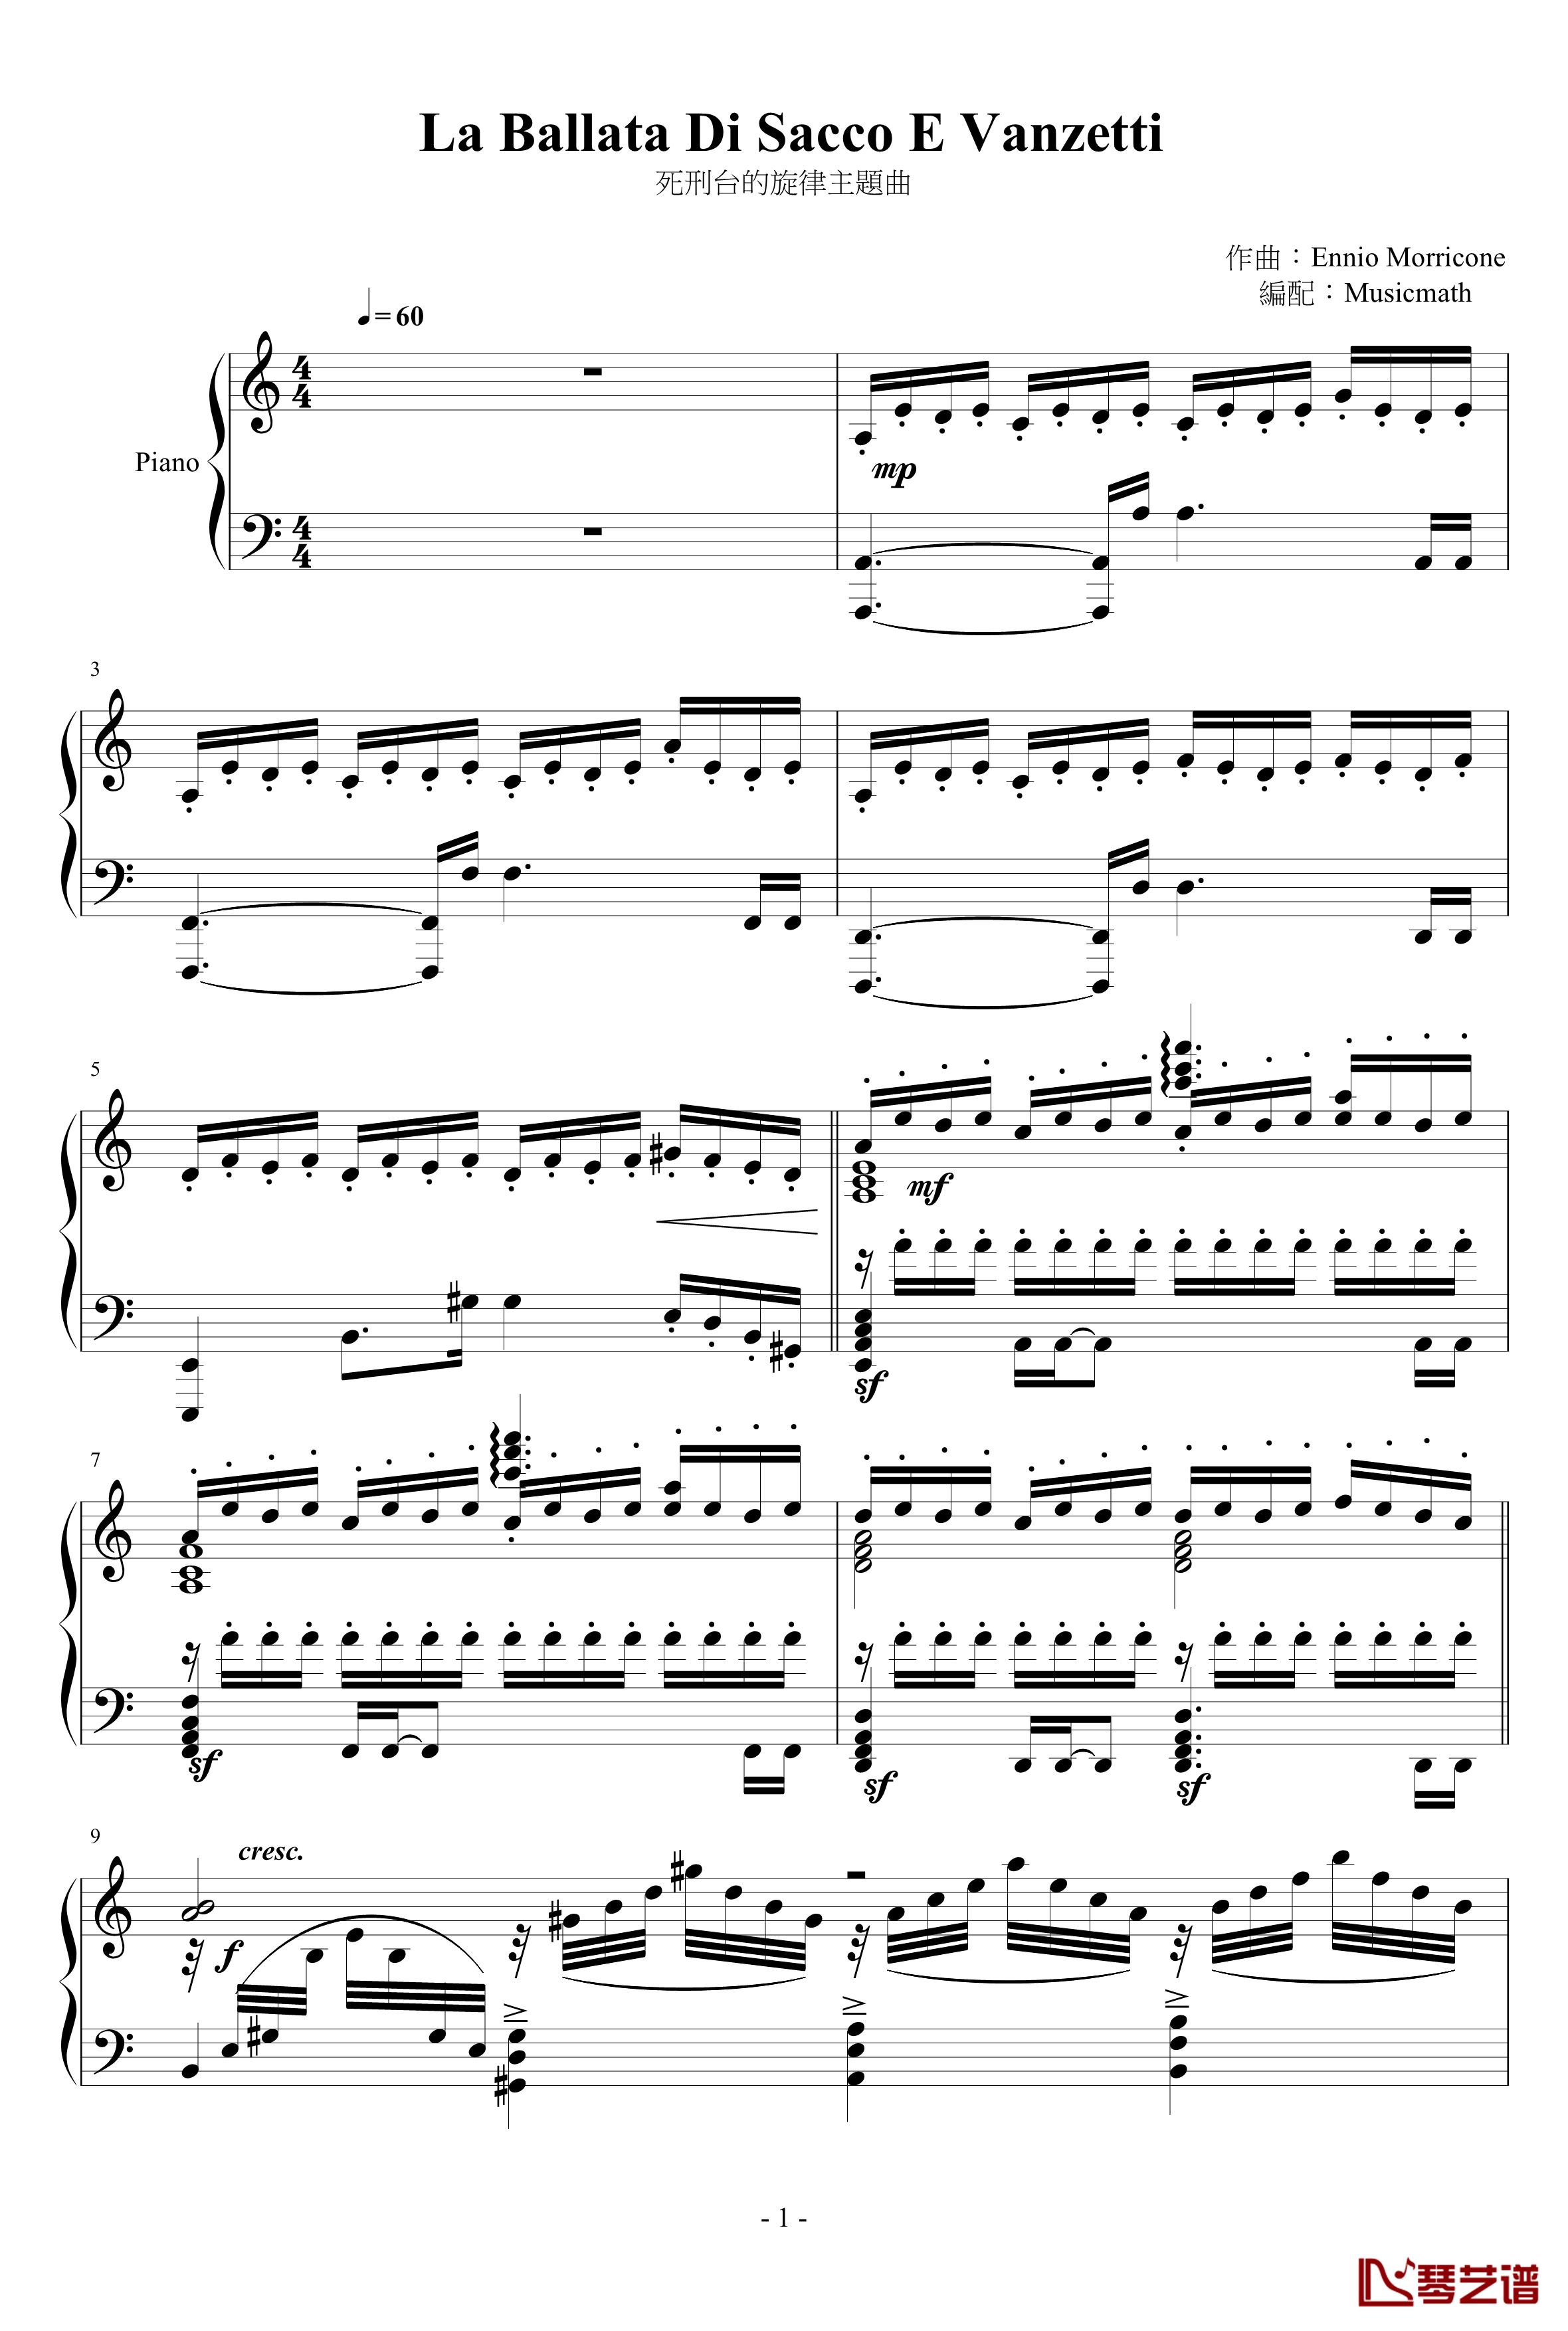 La Ballata Di Sacco E Vanzetti钢琴谱-死刑台的旋律主题曲-Ennio Morricone1